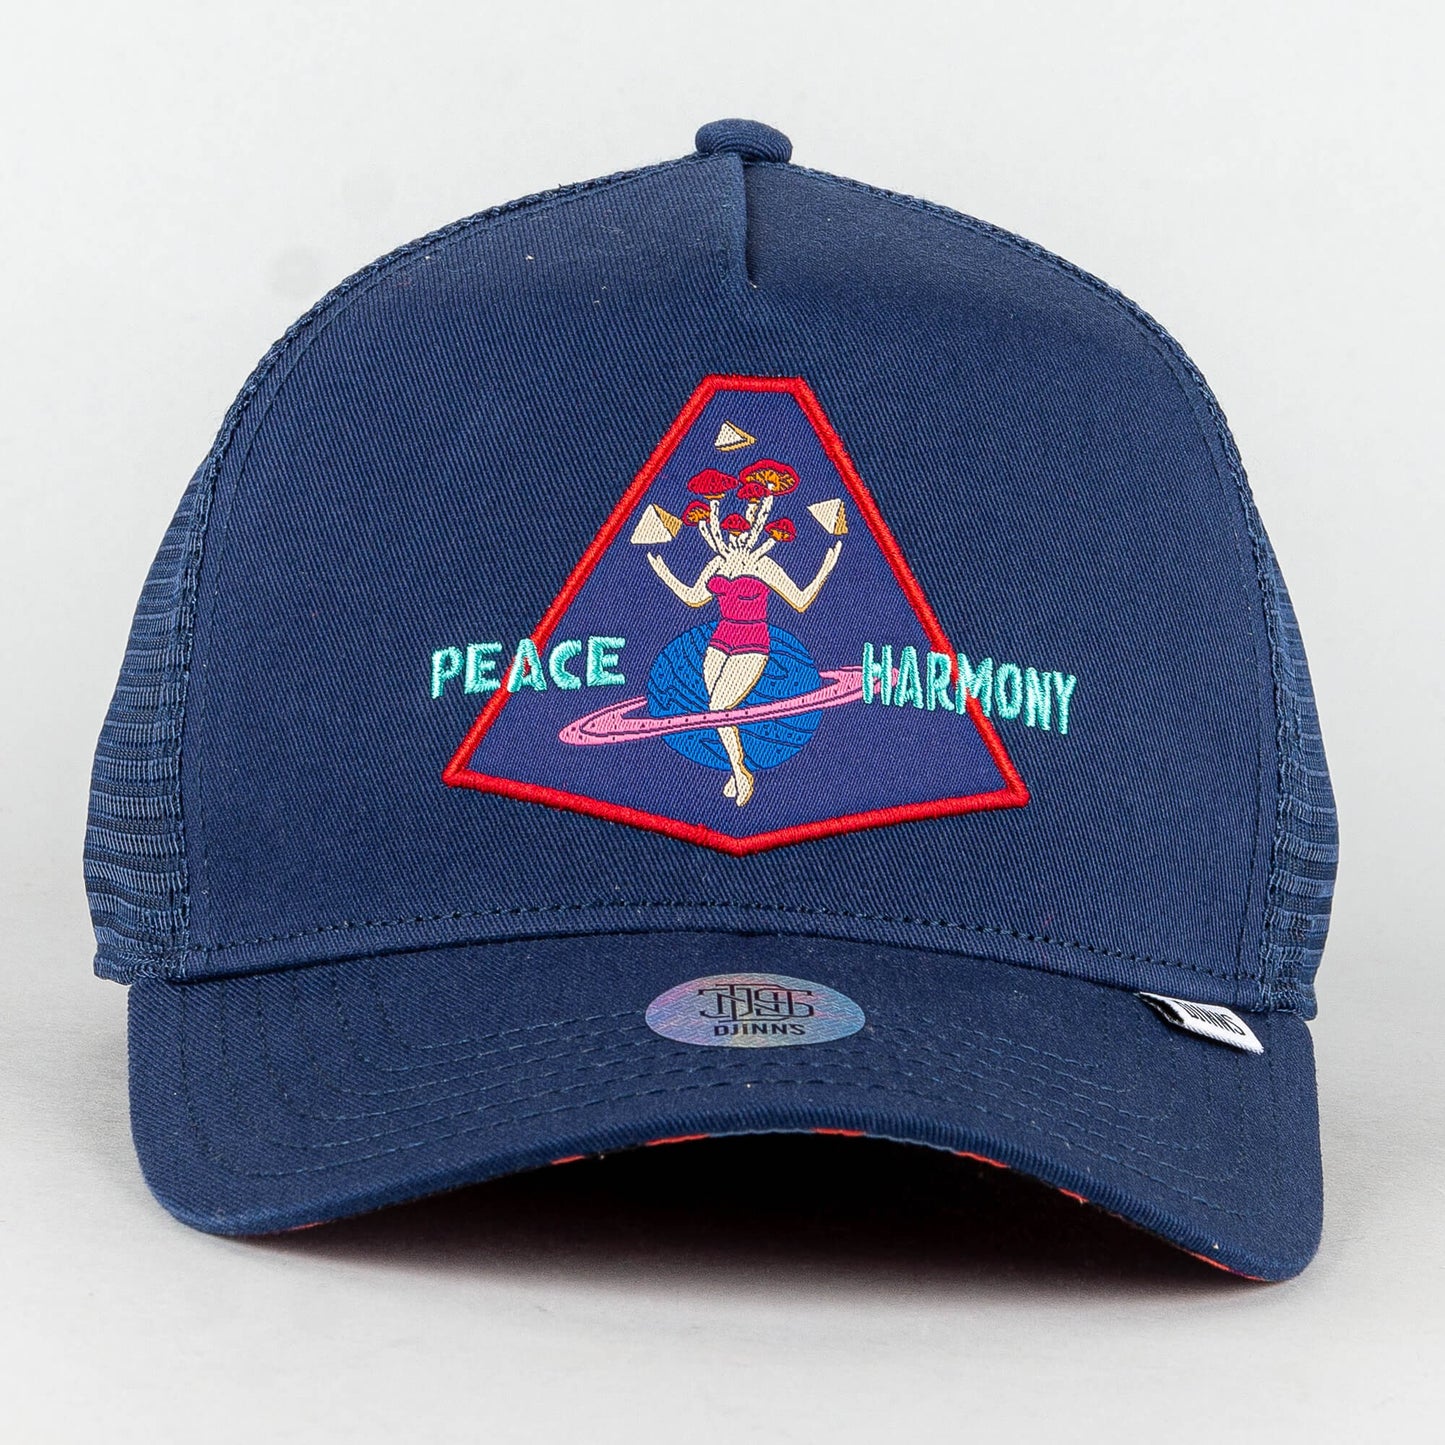 Djinn's HFT Cap Peace & Harmony - navy